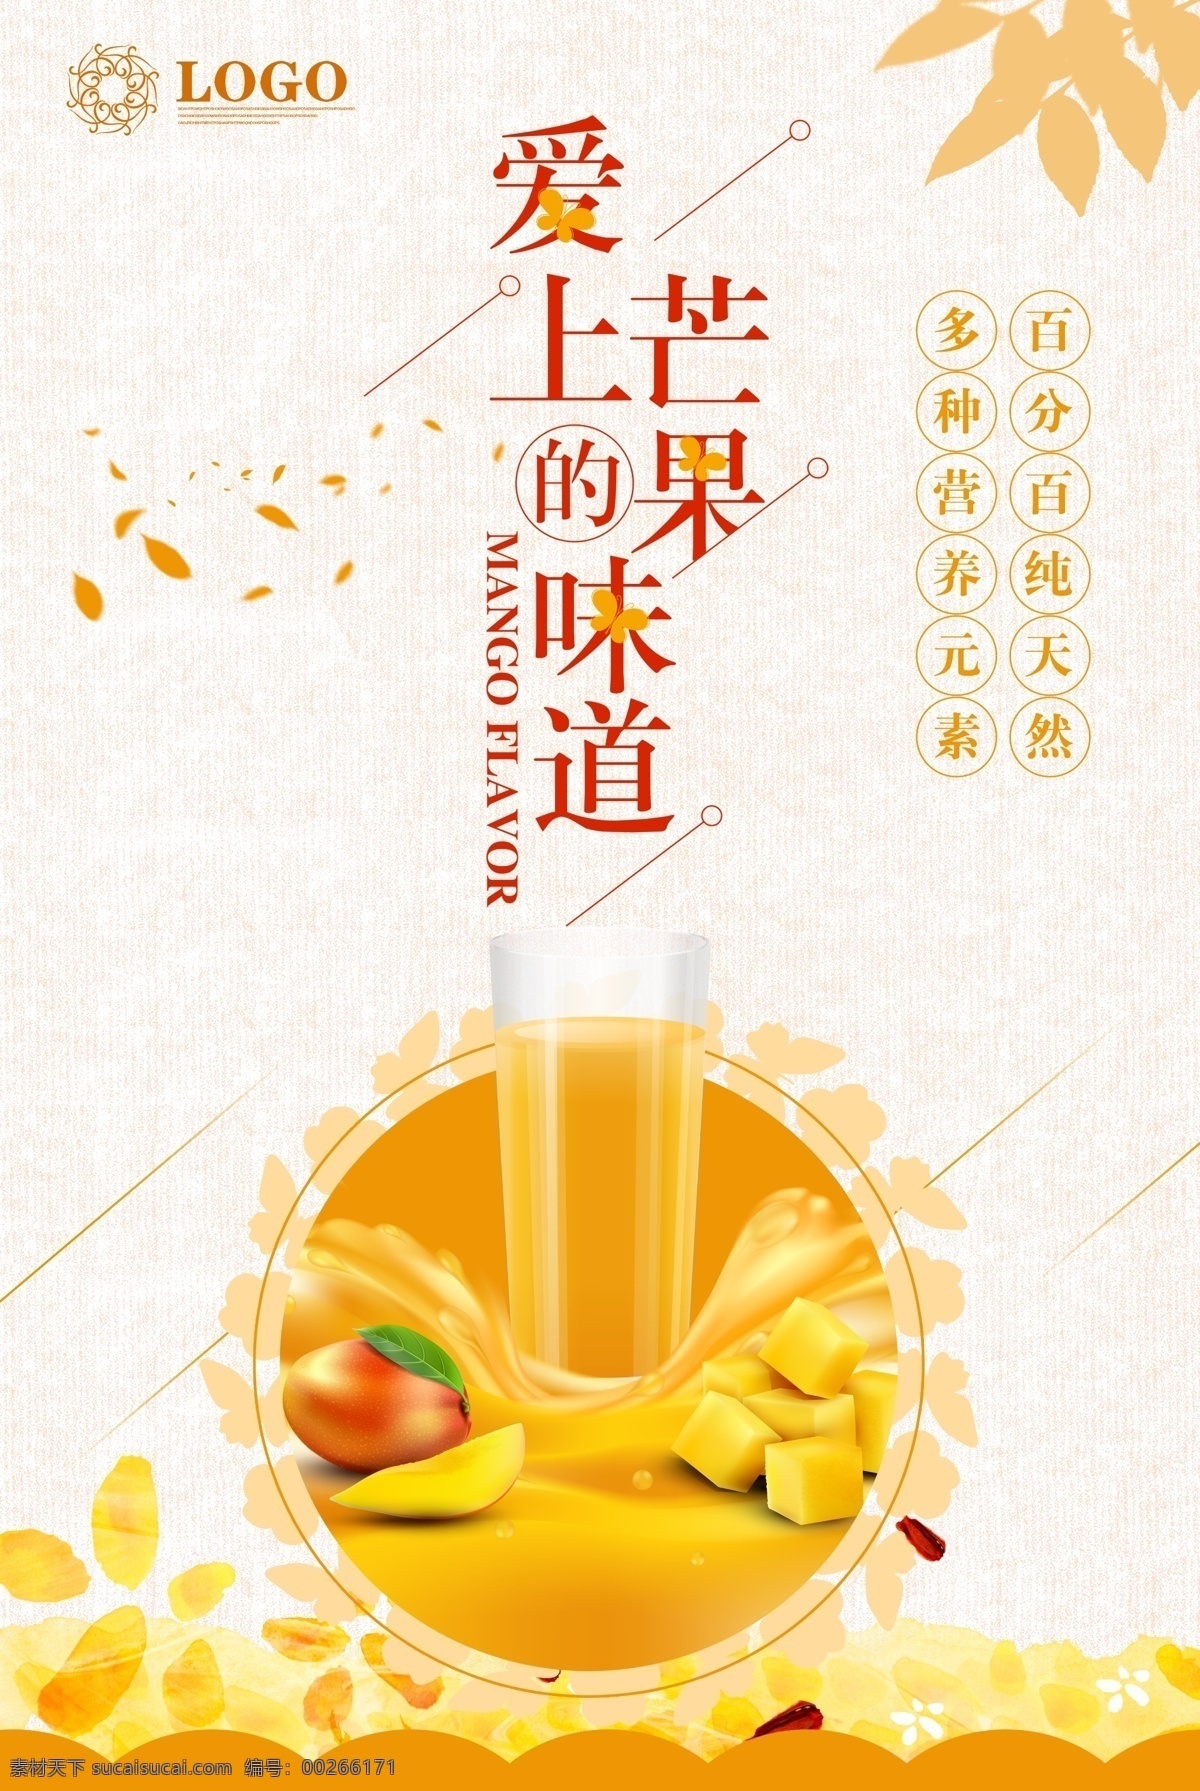 夏日 水果 芒果 美食 系列 清新 简约 宣传 促销 夏日芒果 美味 海报 食物